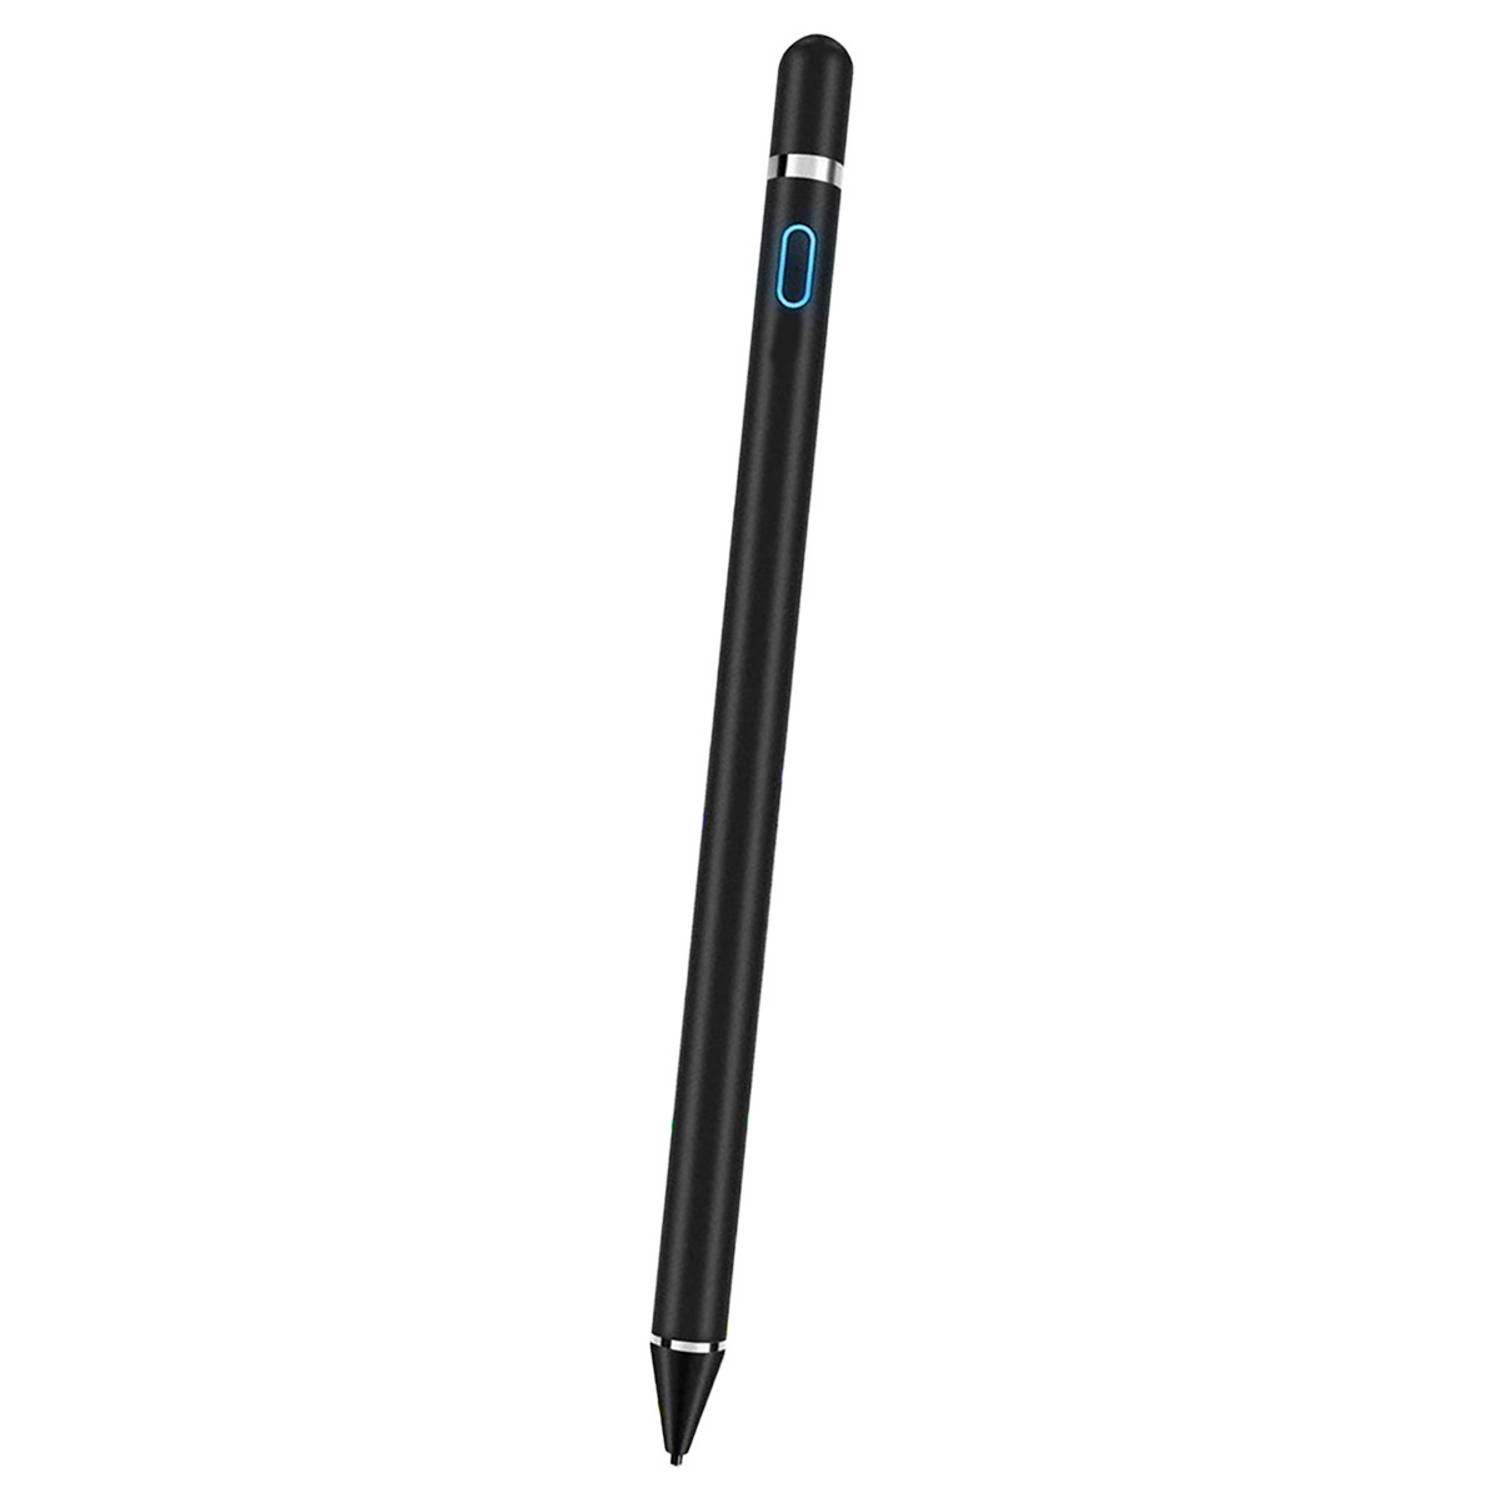 Basey Stylus Pen Universeel Active Touch Pen Voor Tablet en Smartphone - Zwart